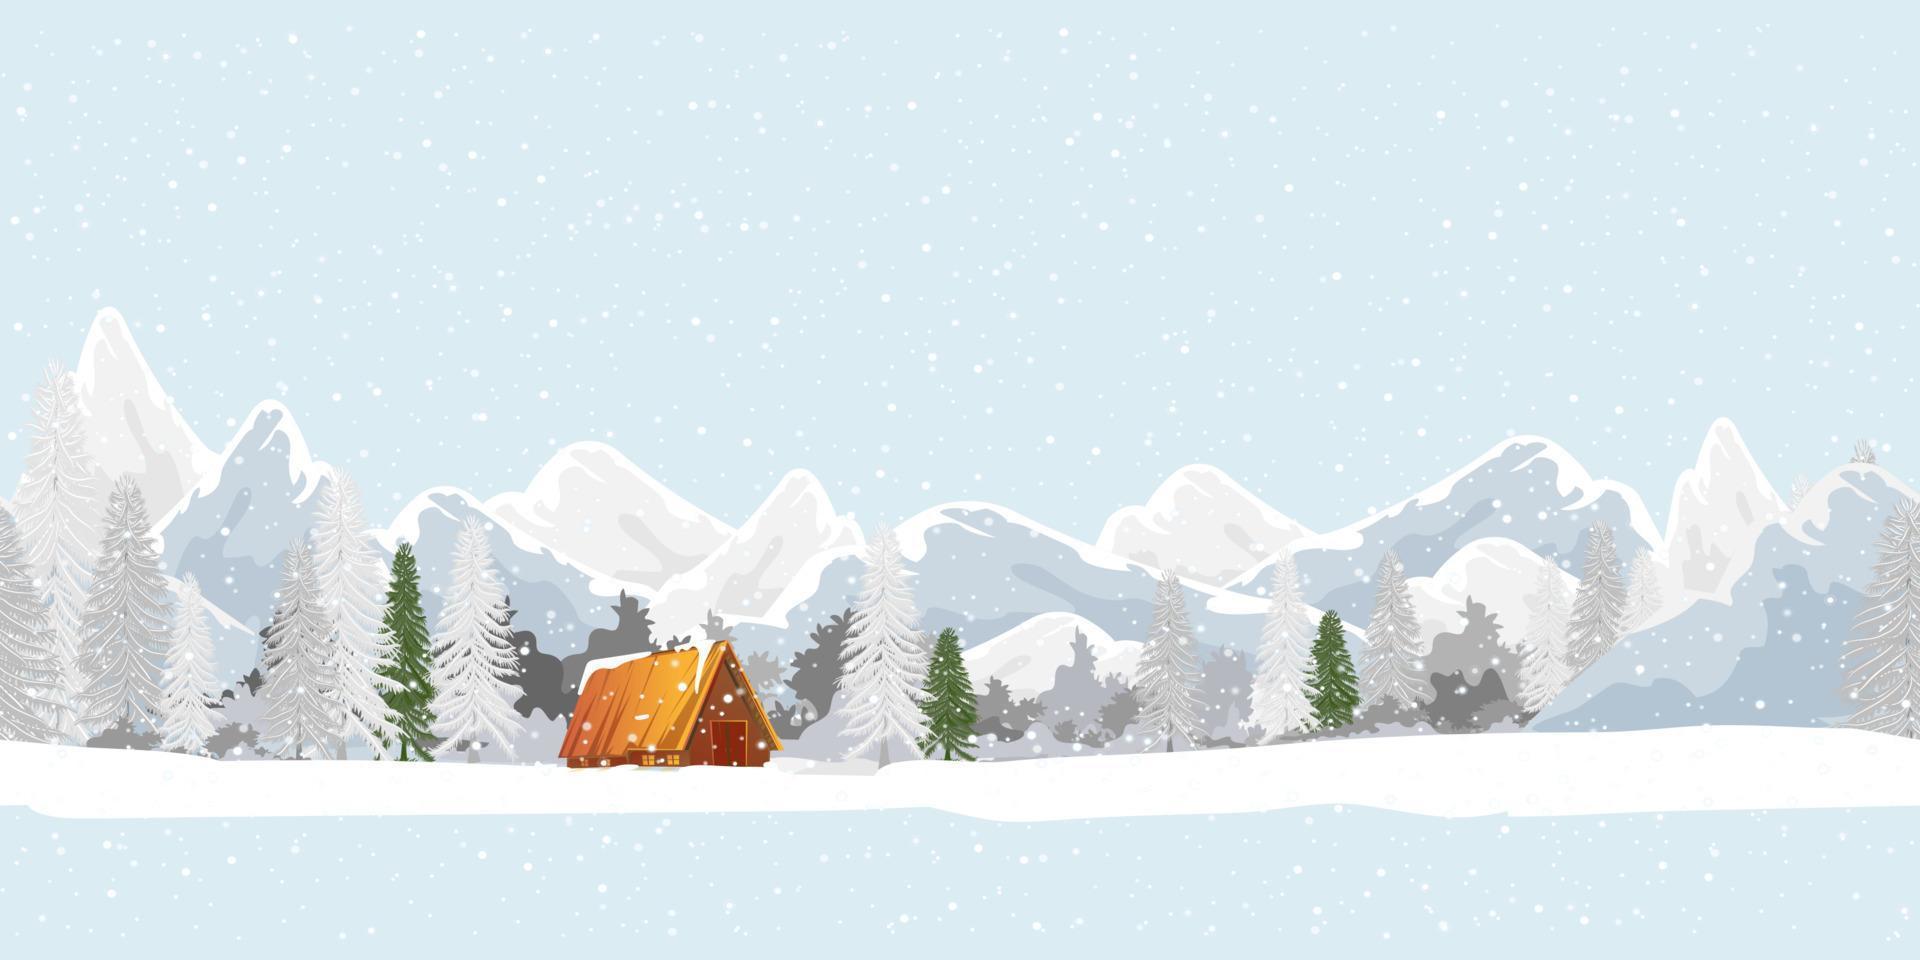 sömlös mönster vinter- landskap med snöar på skog tall träd, bergen på blå himmel, upprepa mönster vinter- sagoland med bruka hus i by, vektor natur för jul eller ny år bakgrund